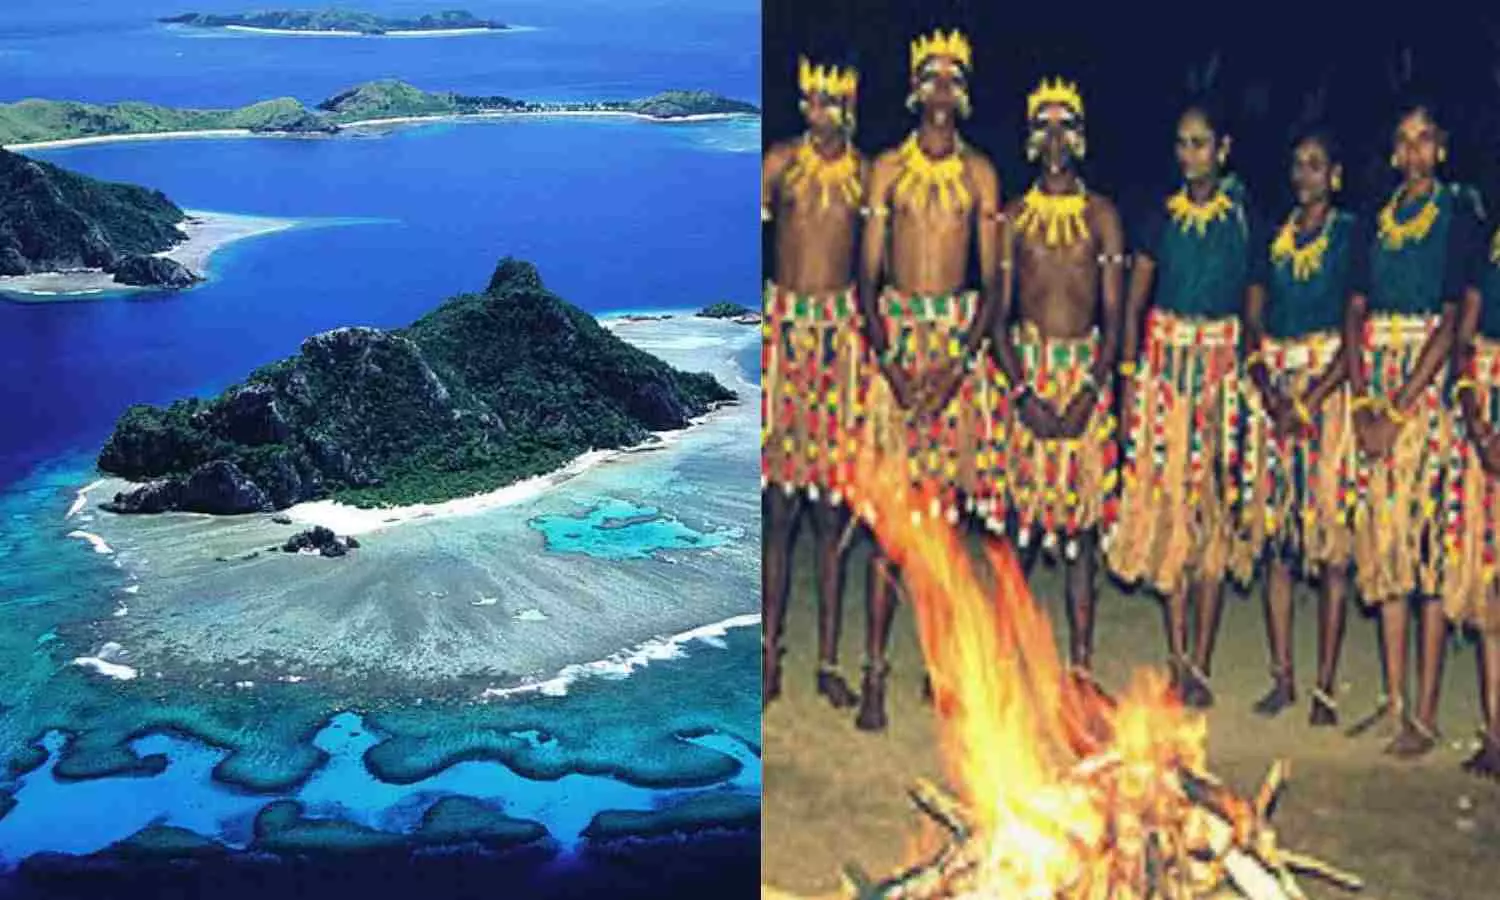 Lakshadweep Culture: खूबसूरत जगहों के अलावा बेहद अलग है लक्षद्वीप का इतिहास, संस्कृति और वेशभूषा